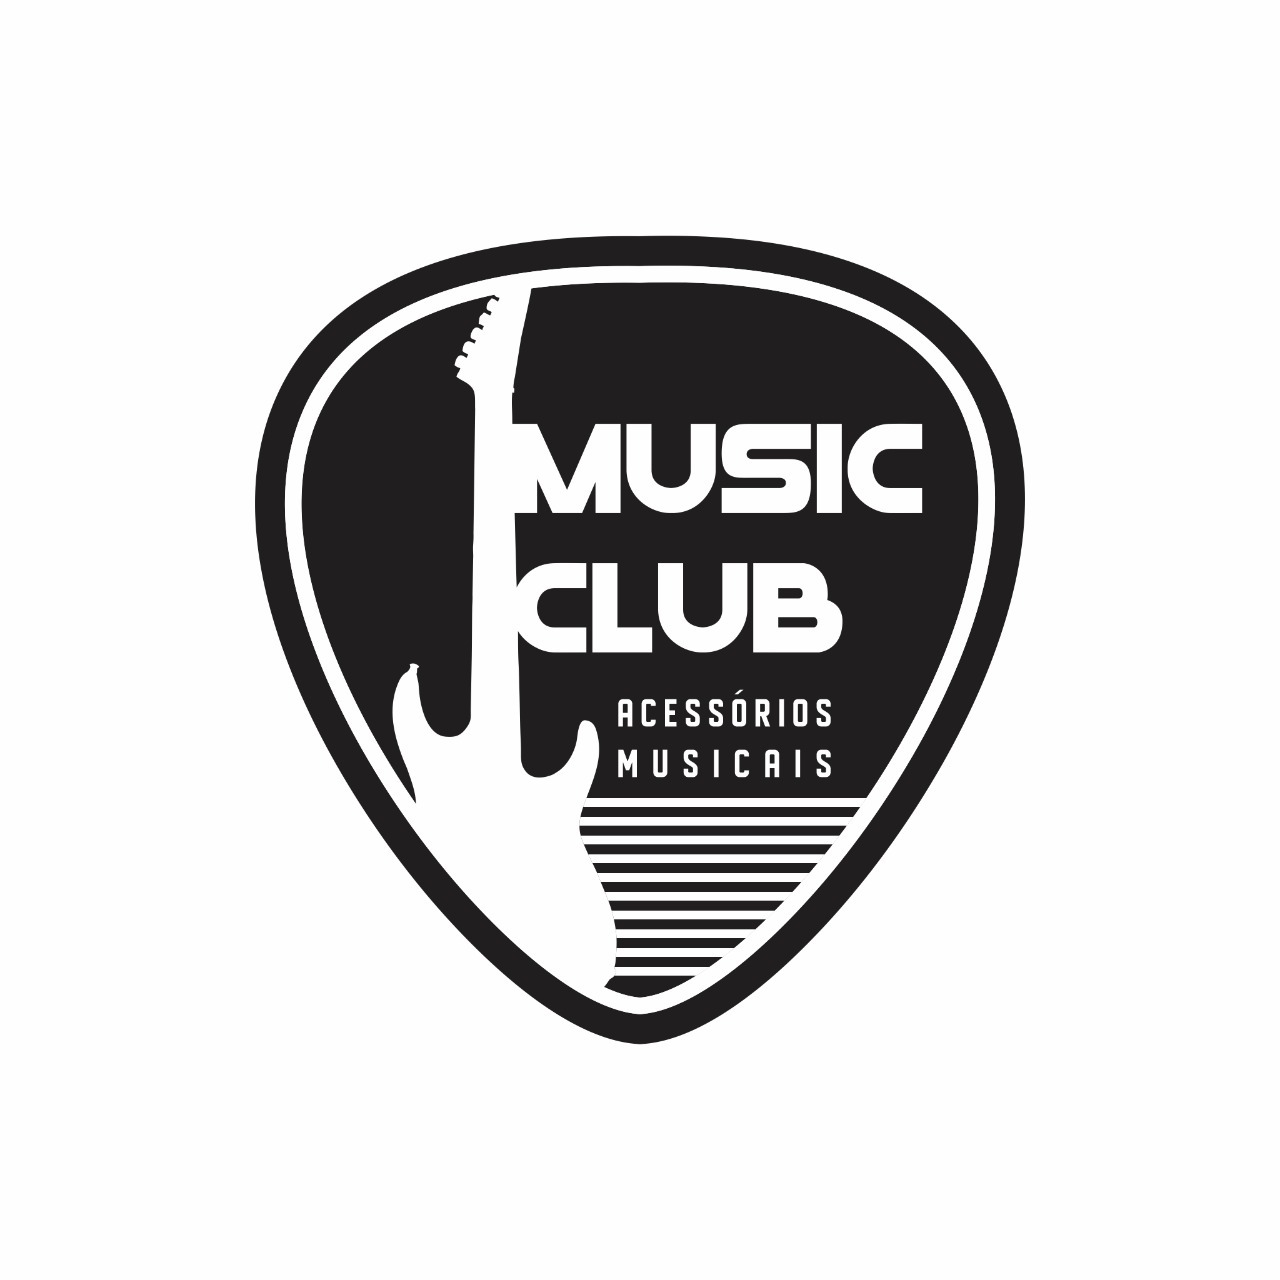 MUSIC-CLUB